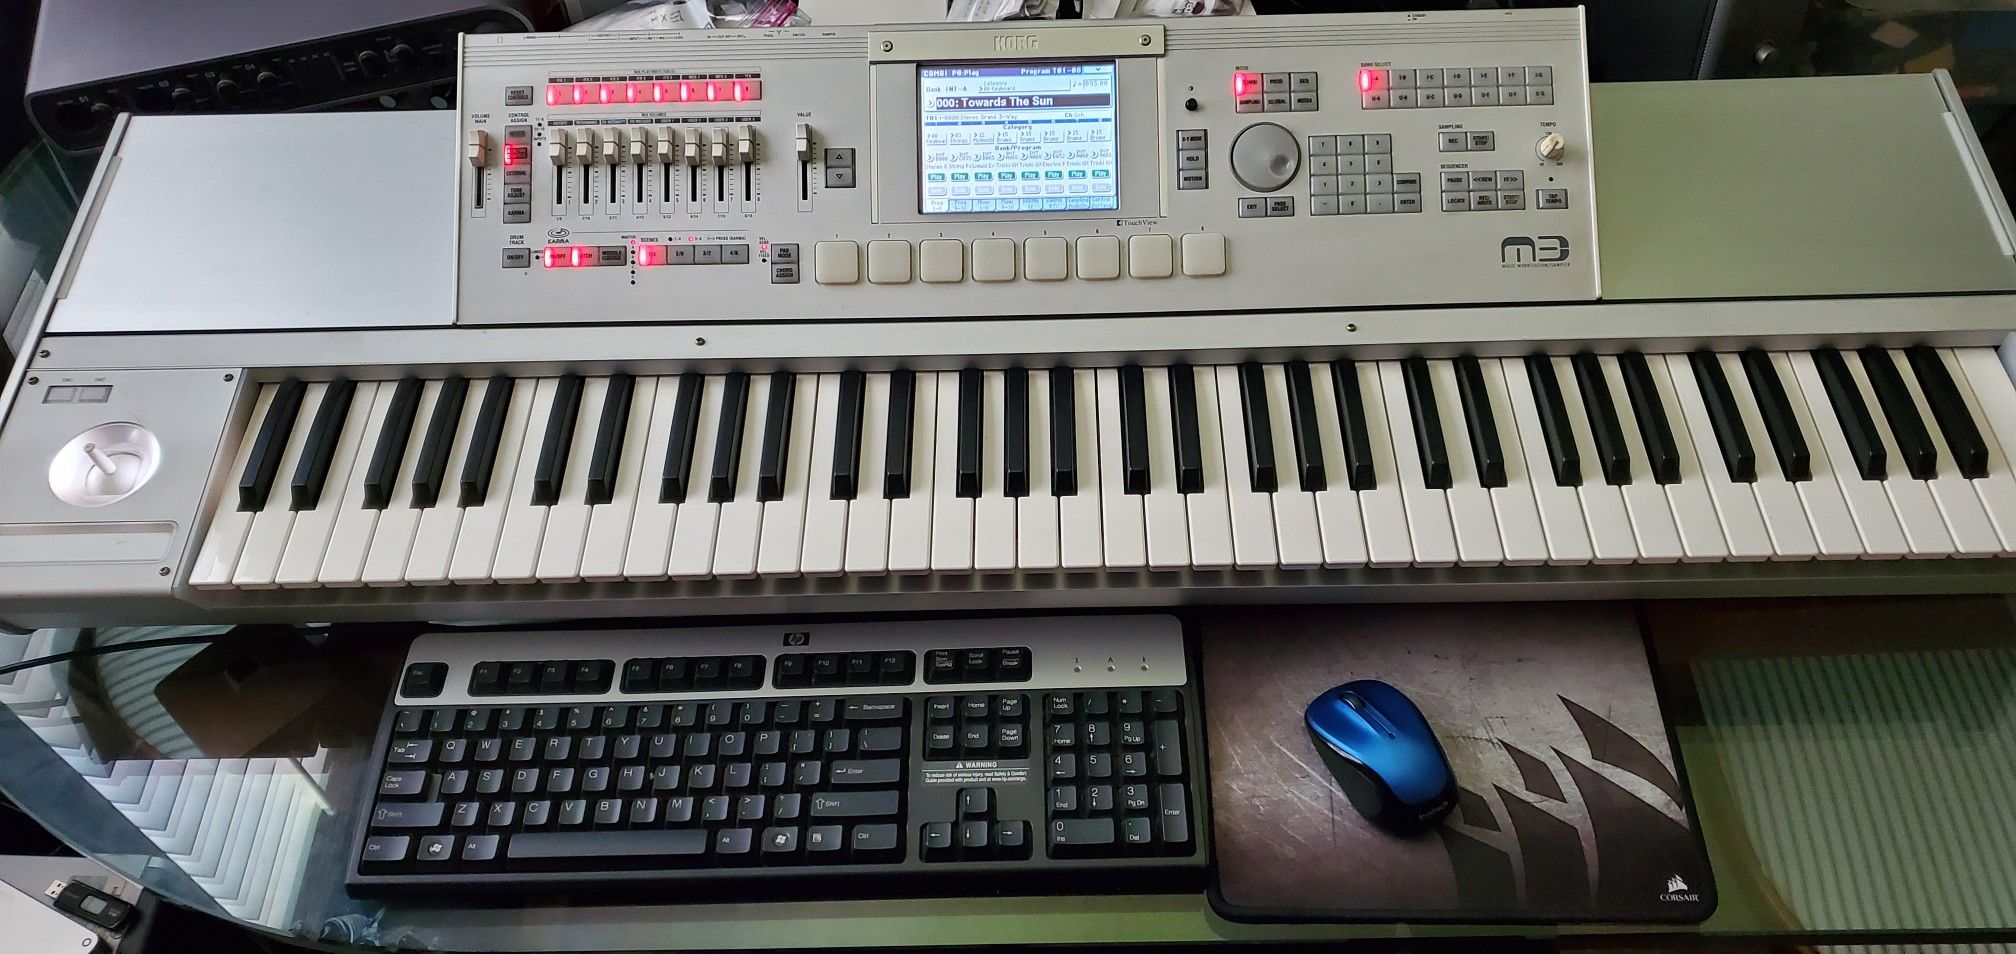 Korg Keyboard - M3 Music Workstation /Sequencer and Sampler